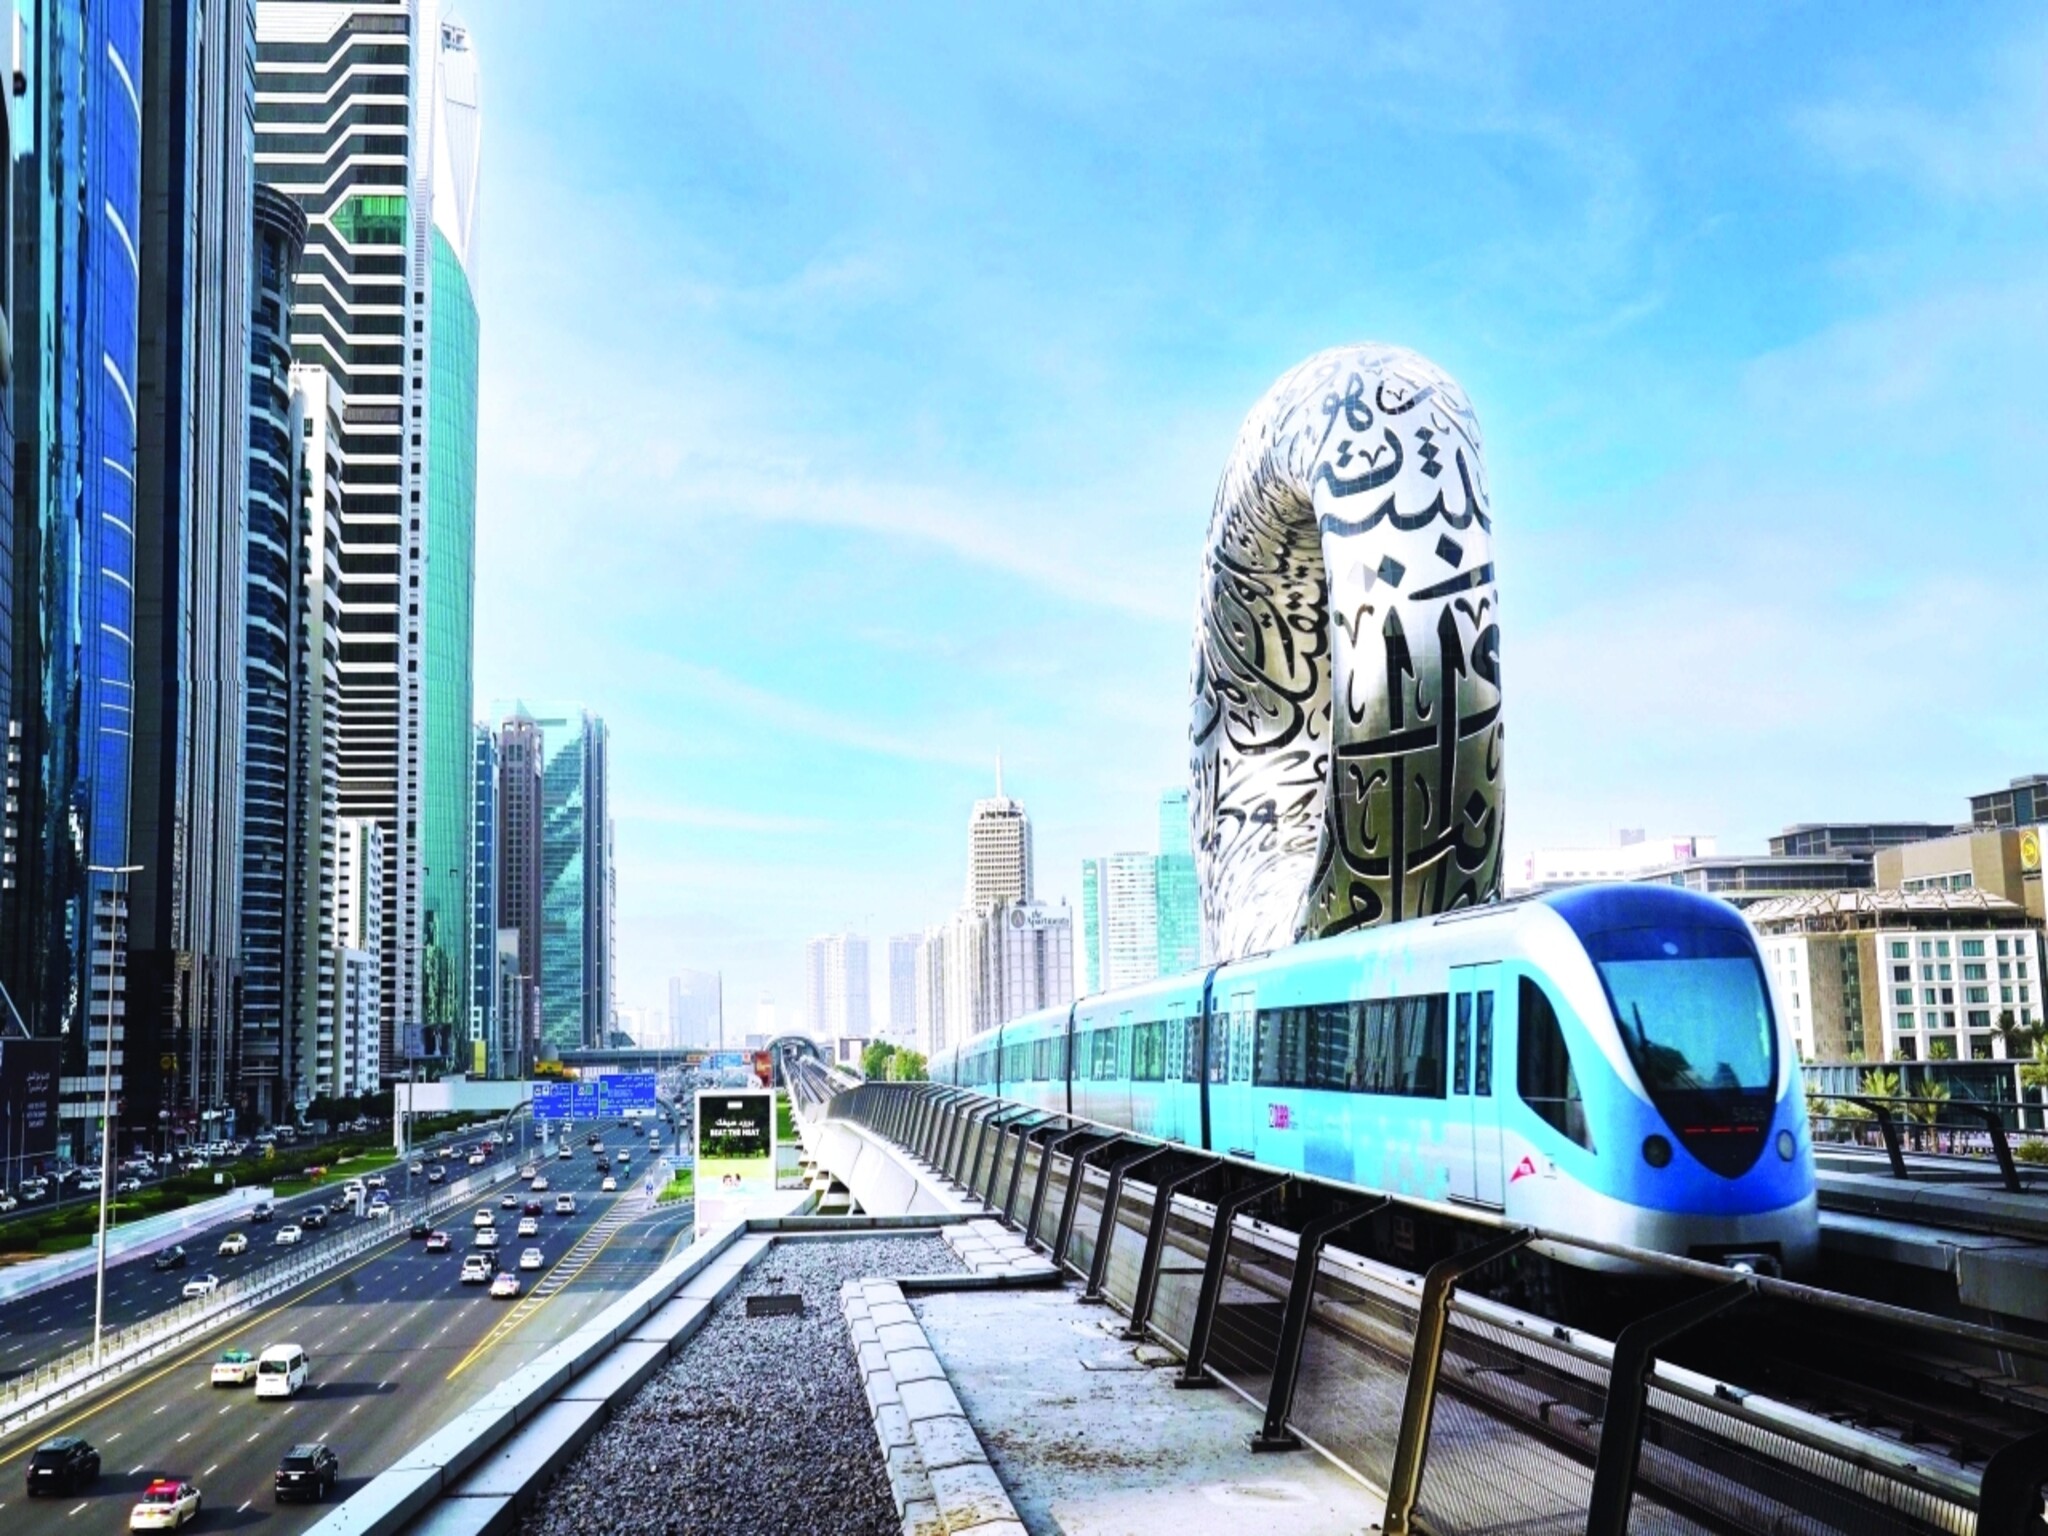 هيئة الطرق والمواصلات تتيح خدمة "مترو دبي" على الخط الأحمر في الاتجاهين